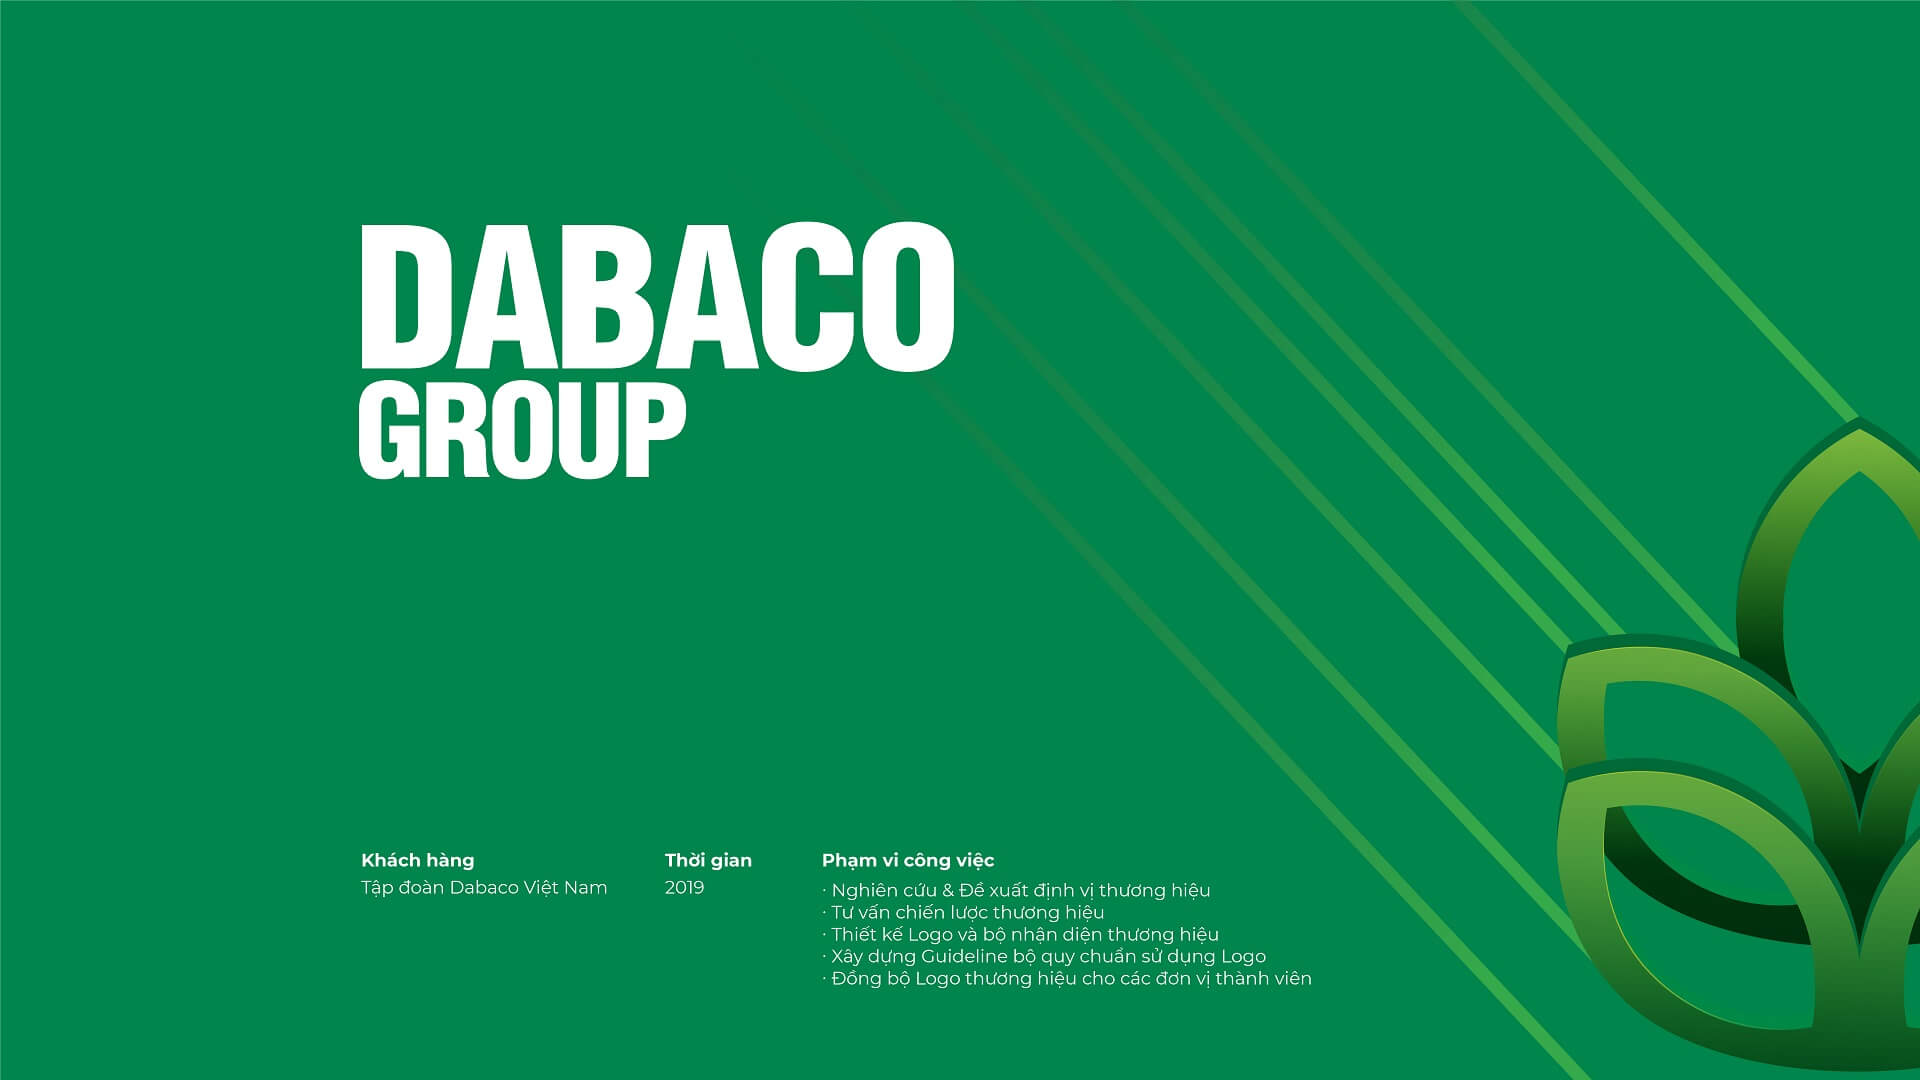 Dự án thiết kế bộ nhận diện thương hiệu, thiết kế logo DABACO GROUP của Sao Kim Branding - 1